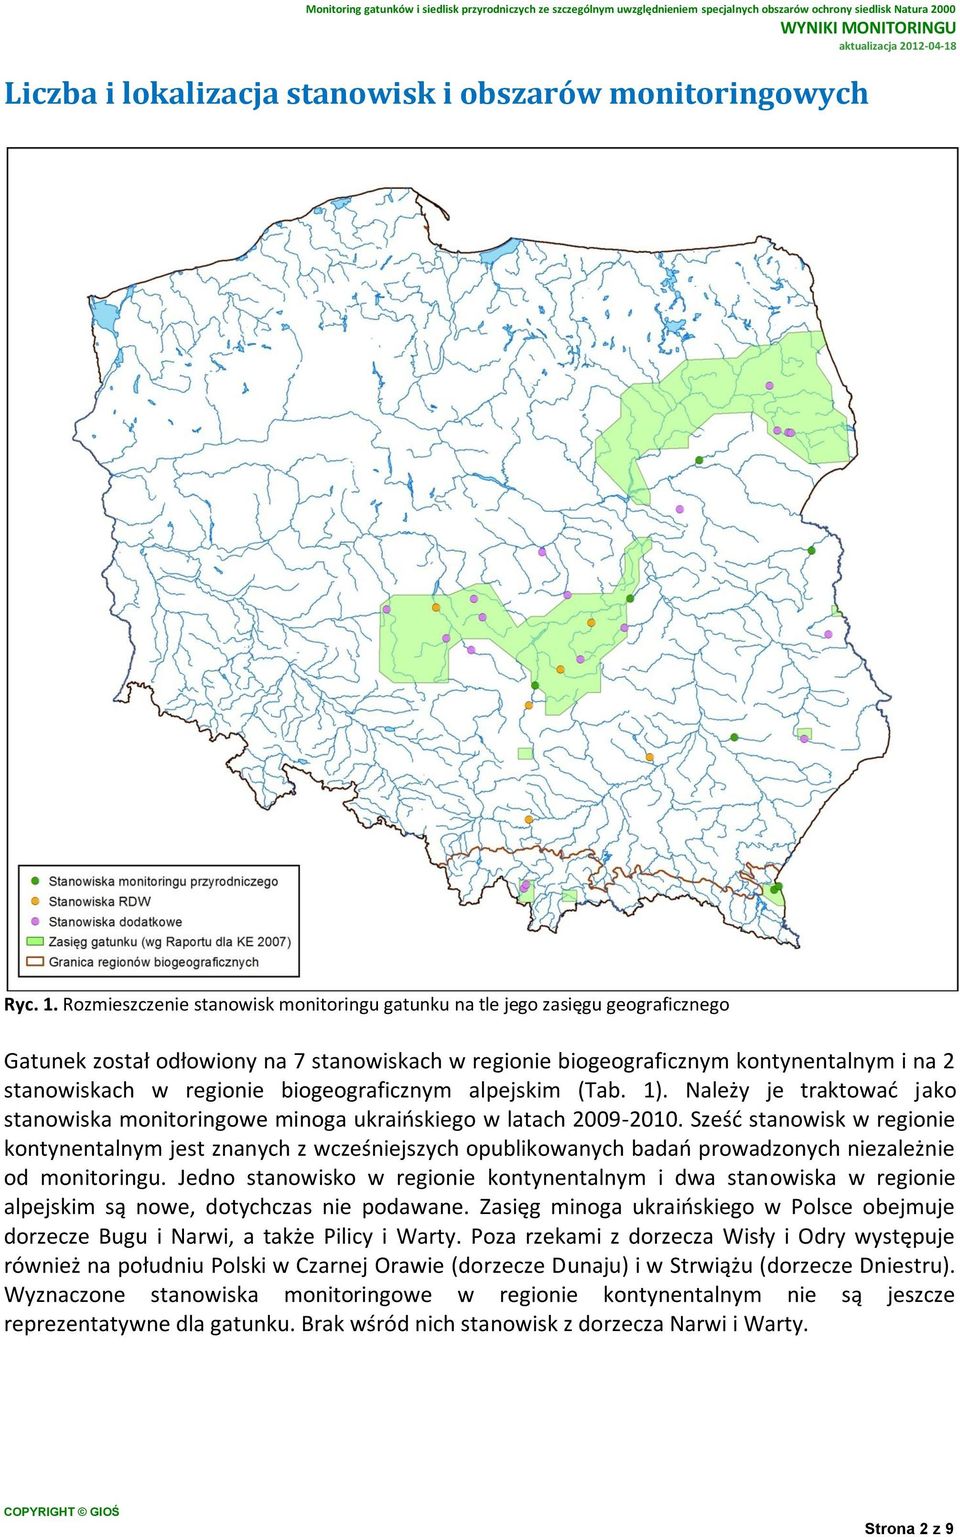 biogeograficznym alpejskim (Tab. 1). Należy je traktować jako stanowiska monitoringowe minoga ukraińskiego w latach 2009-2010.